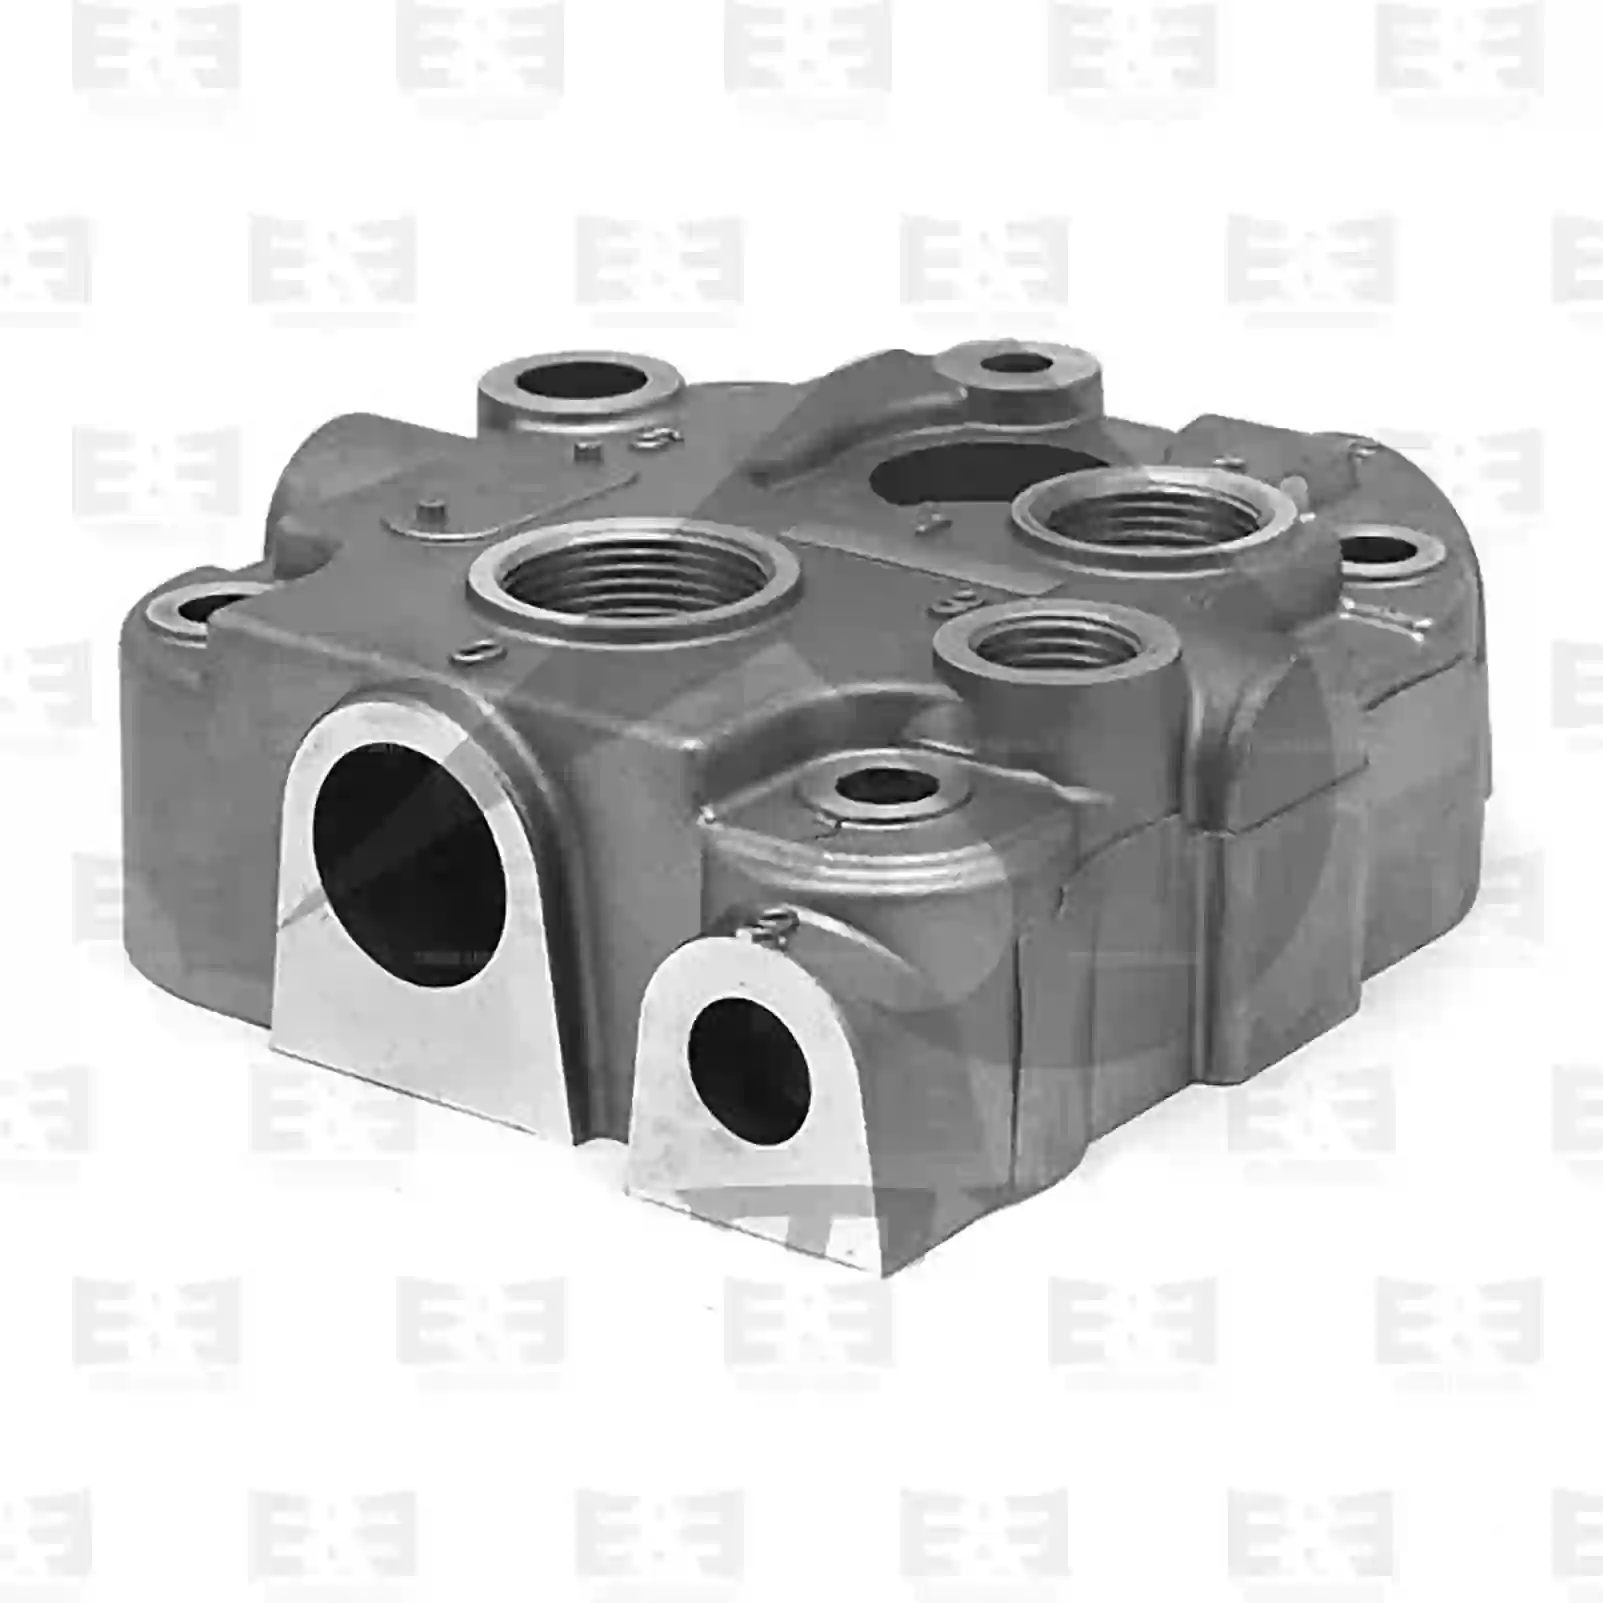  Cylinder head, compressor || E&E Truck Spare Parts | Truck Spare Parts, Auotomotive Spare Parts